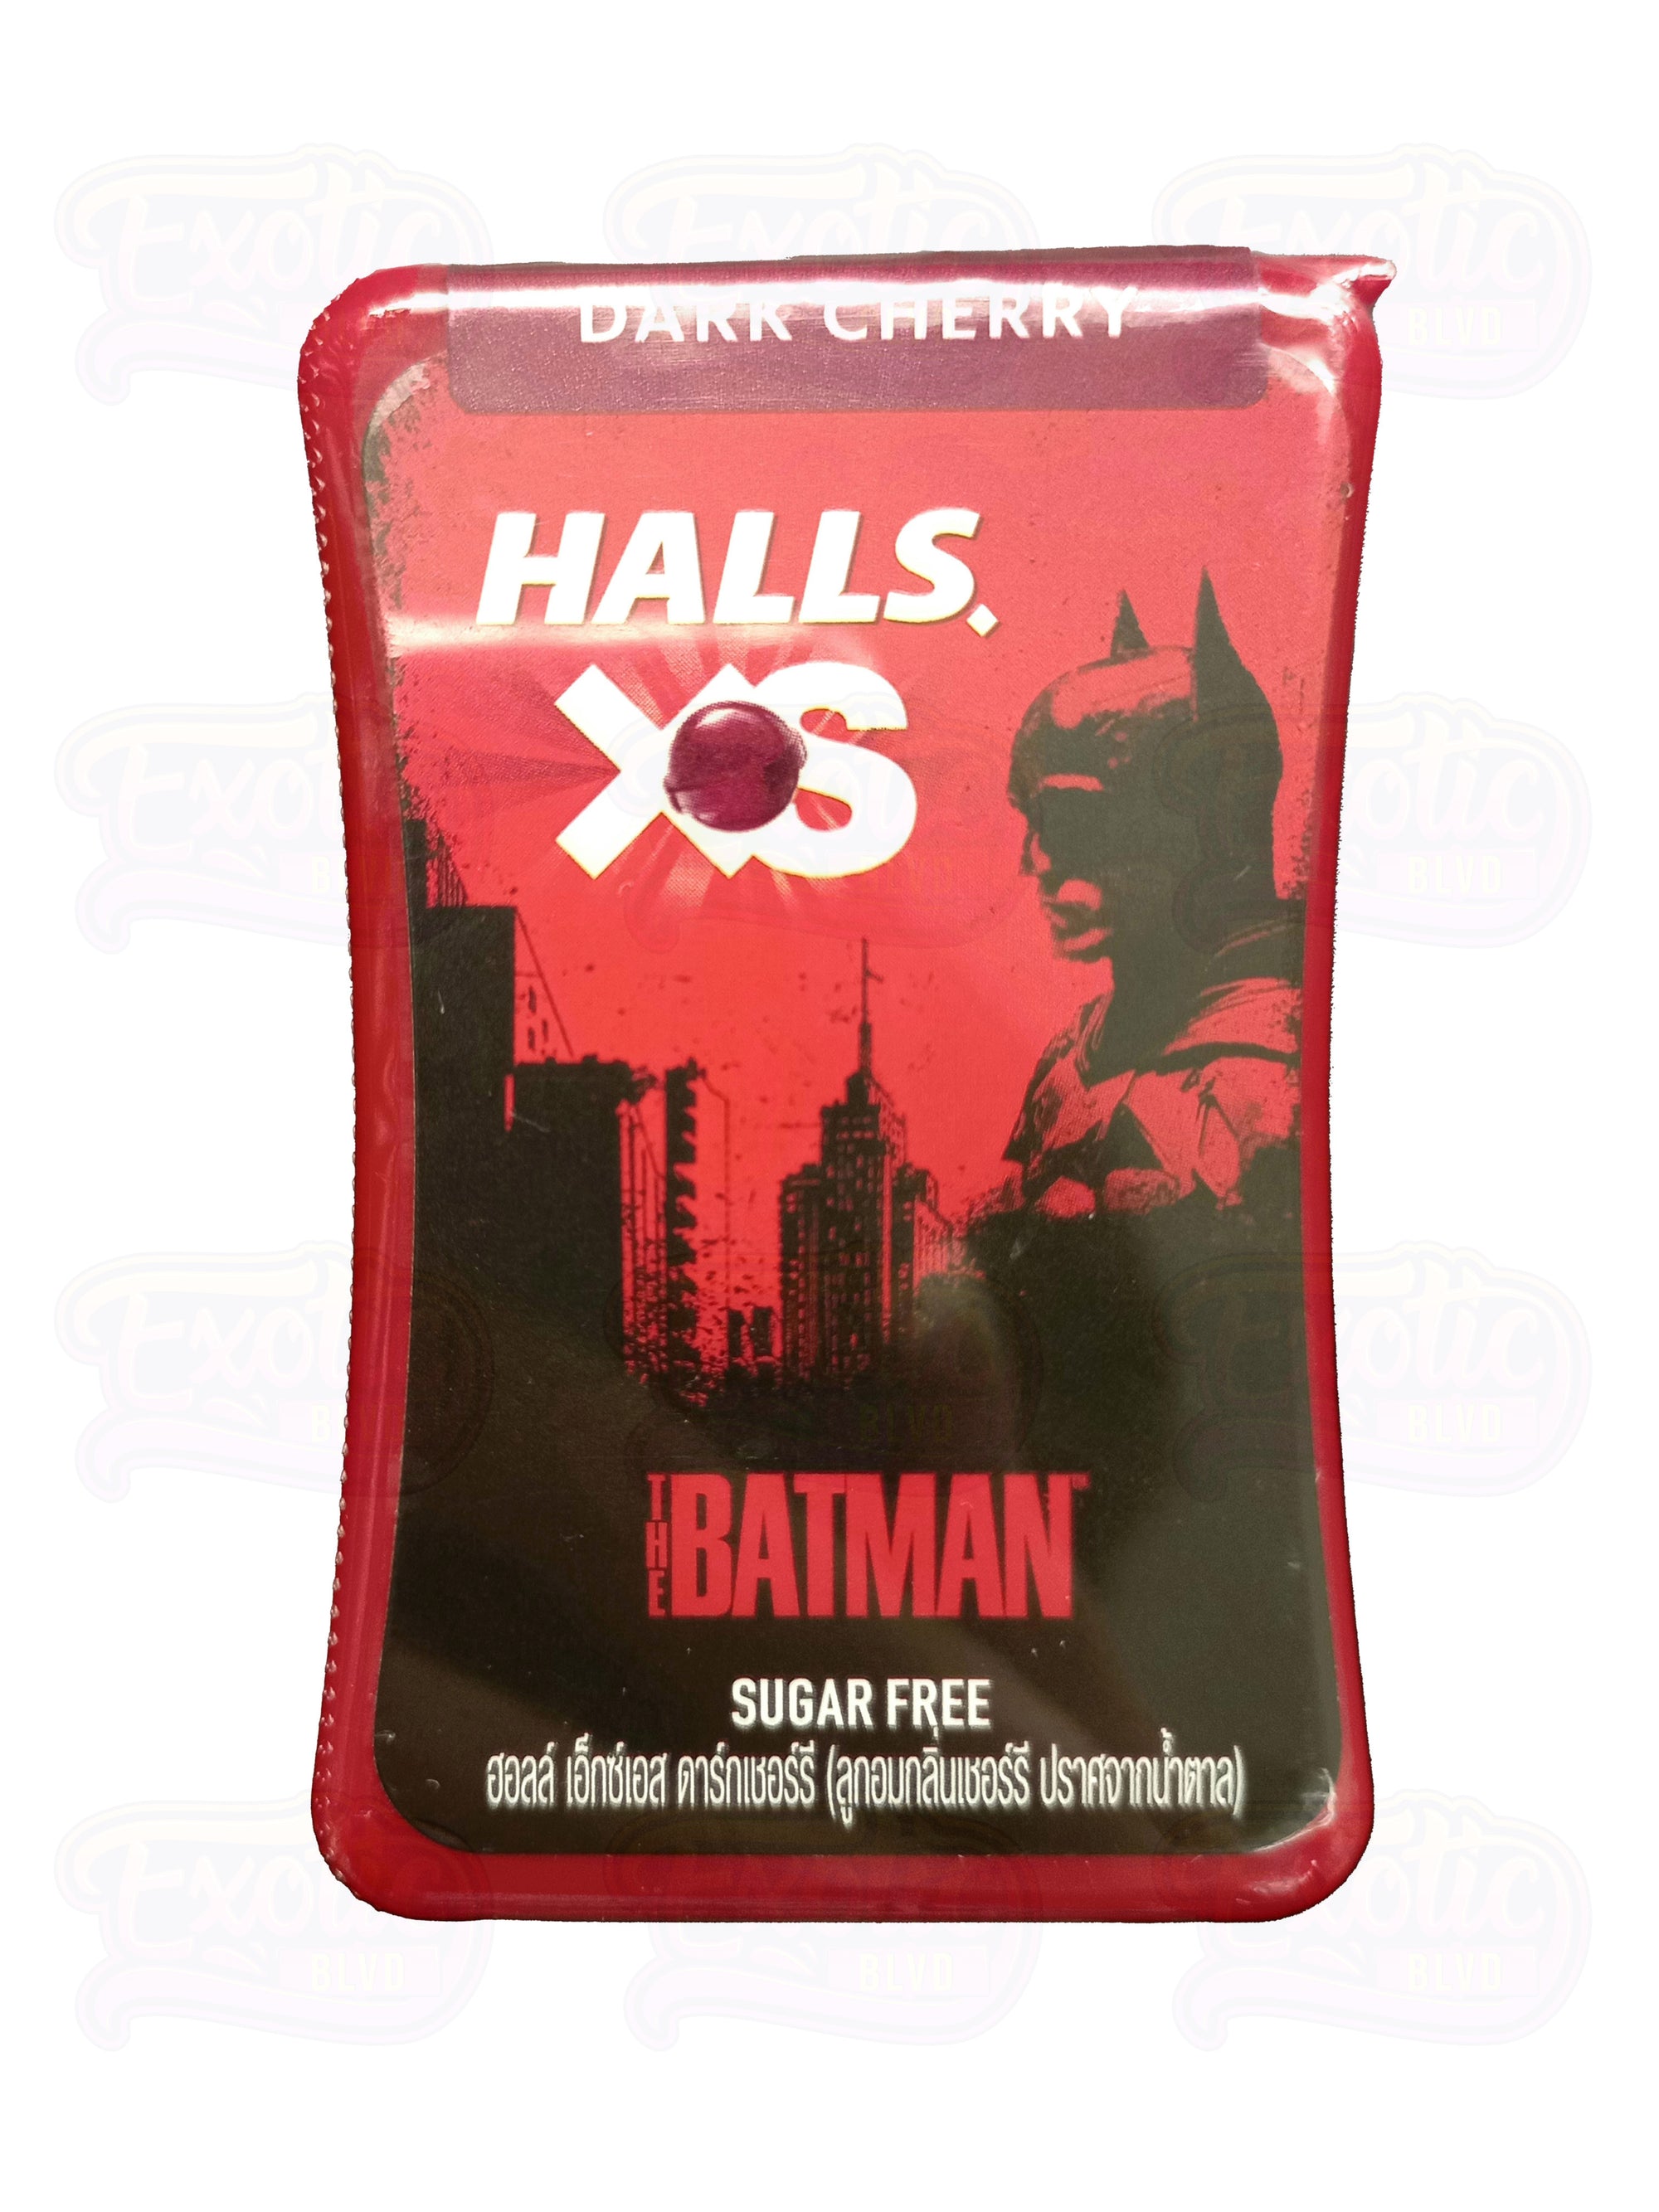 Halls XS Batman